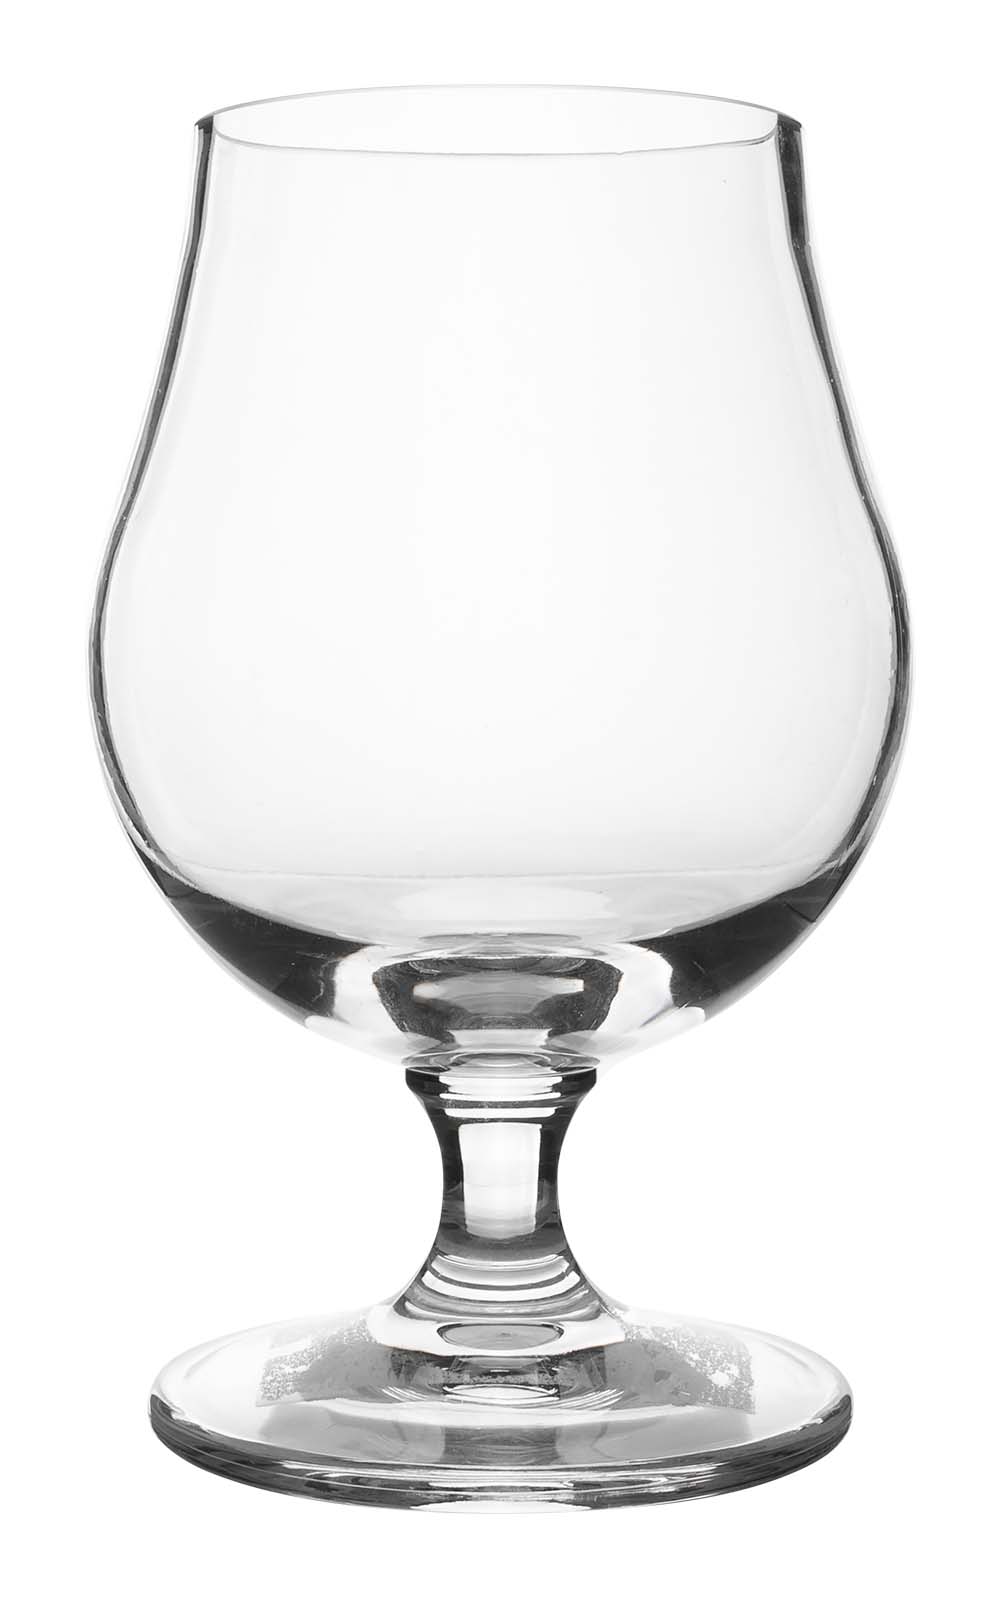 6101415 Een stijlvol speciaalbierglas gemaakt van sterk kunststof. Hierdoor is het glas kraswerend en lichtgewicht. Ook is deze vaatwasmachinebestendig en BPA vrij.